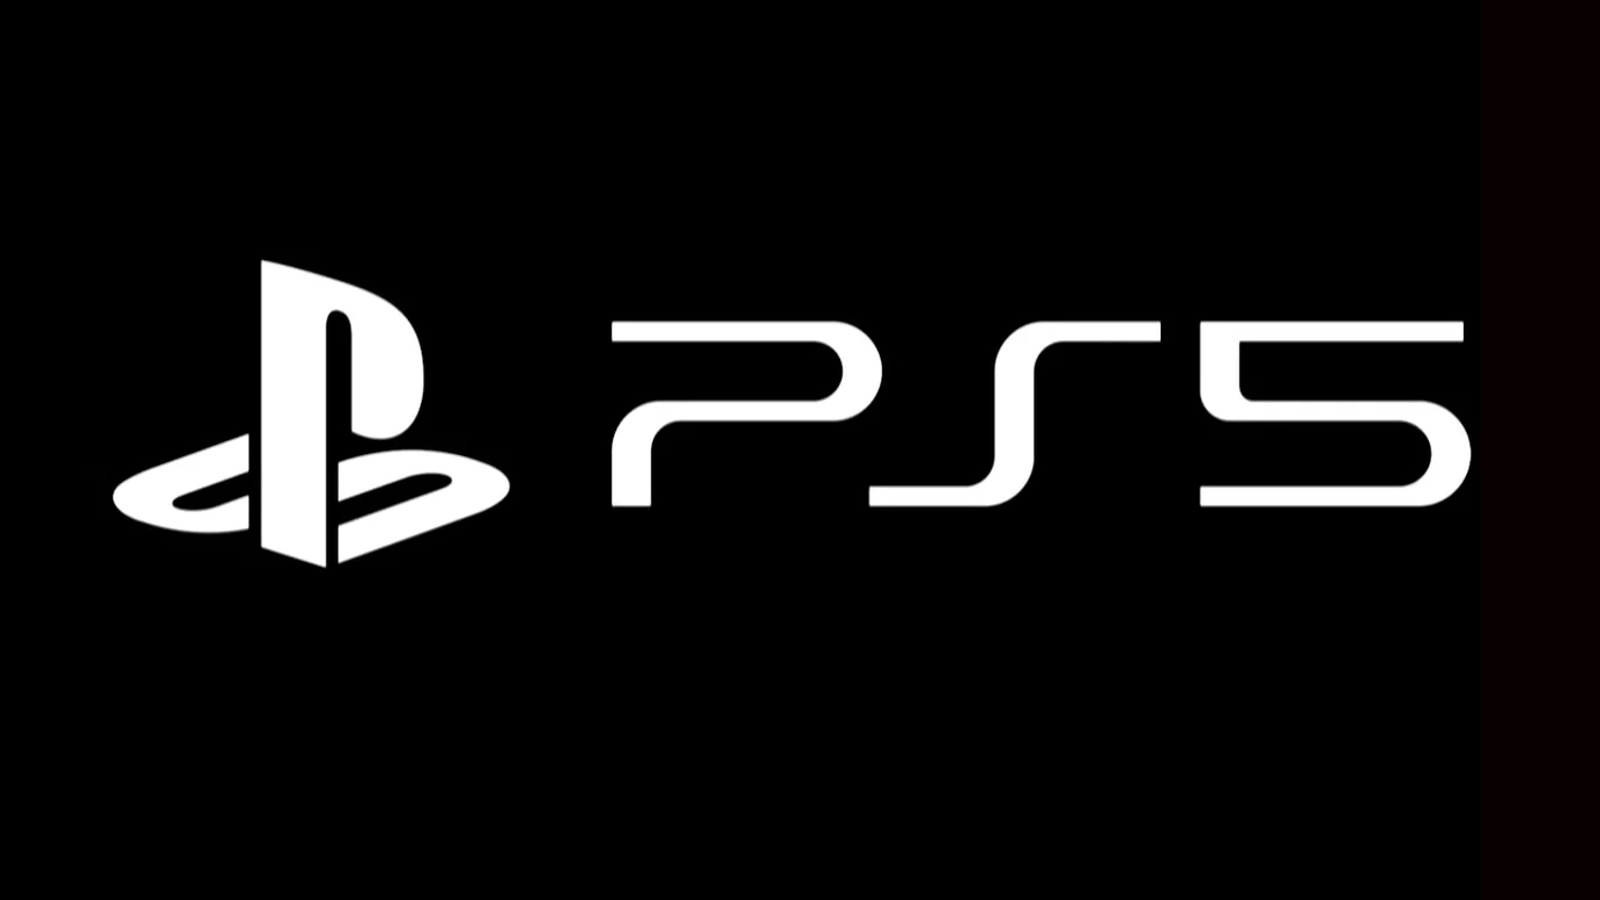 Qual o custo de produção de um PlayStation 5? - Olhar Digital